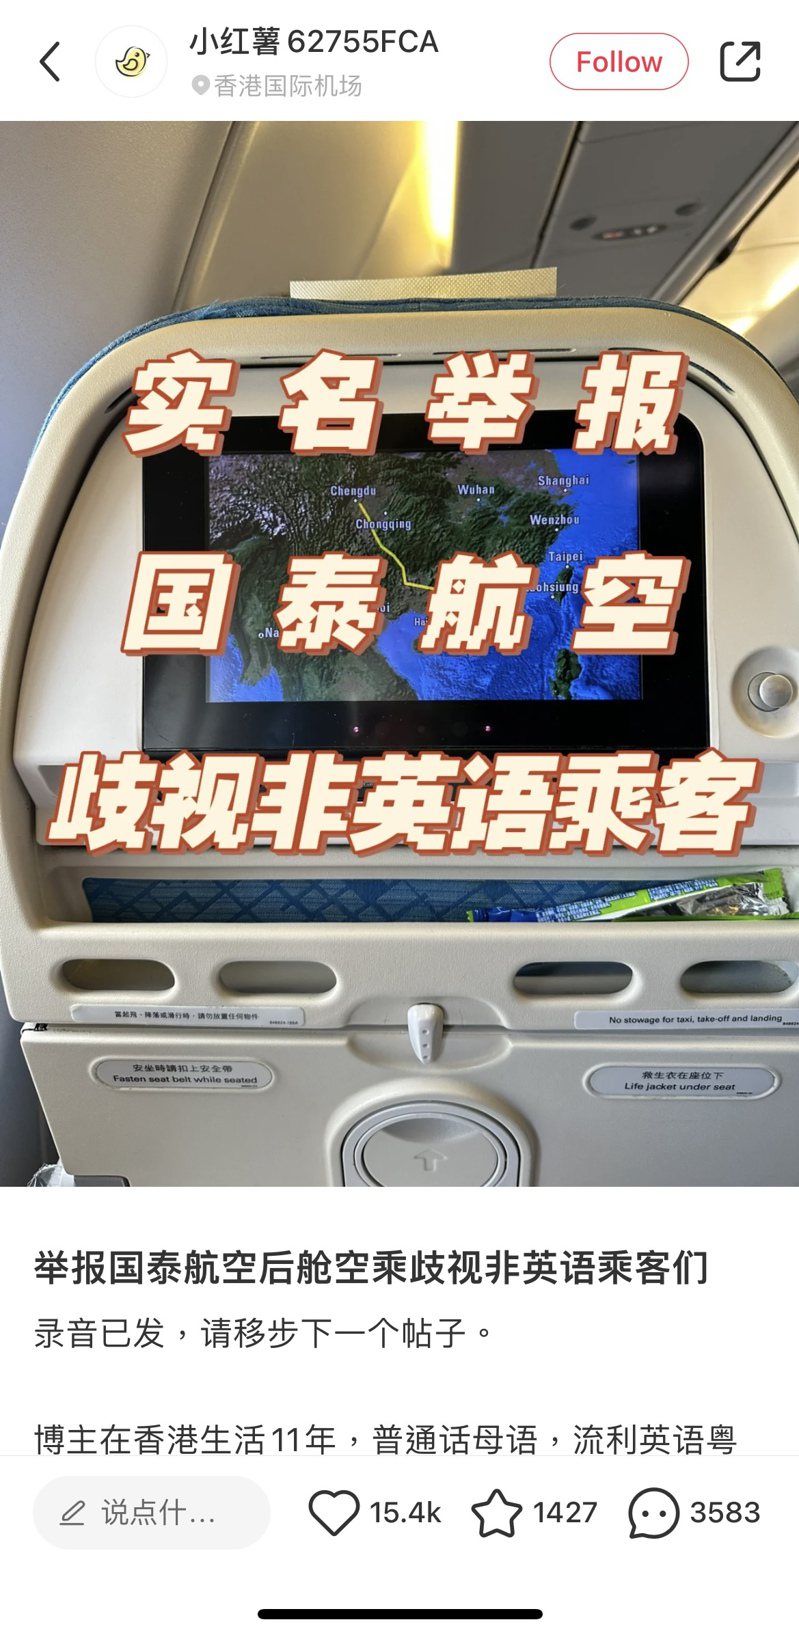 有中國乘客22日在社交媒體「小紅書」以「實名舉報國泰航空歧視非英語乘客」為題發文。(取材自小紅書)